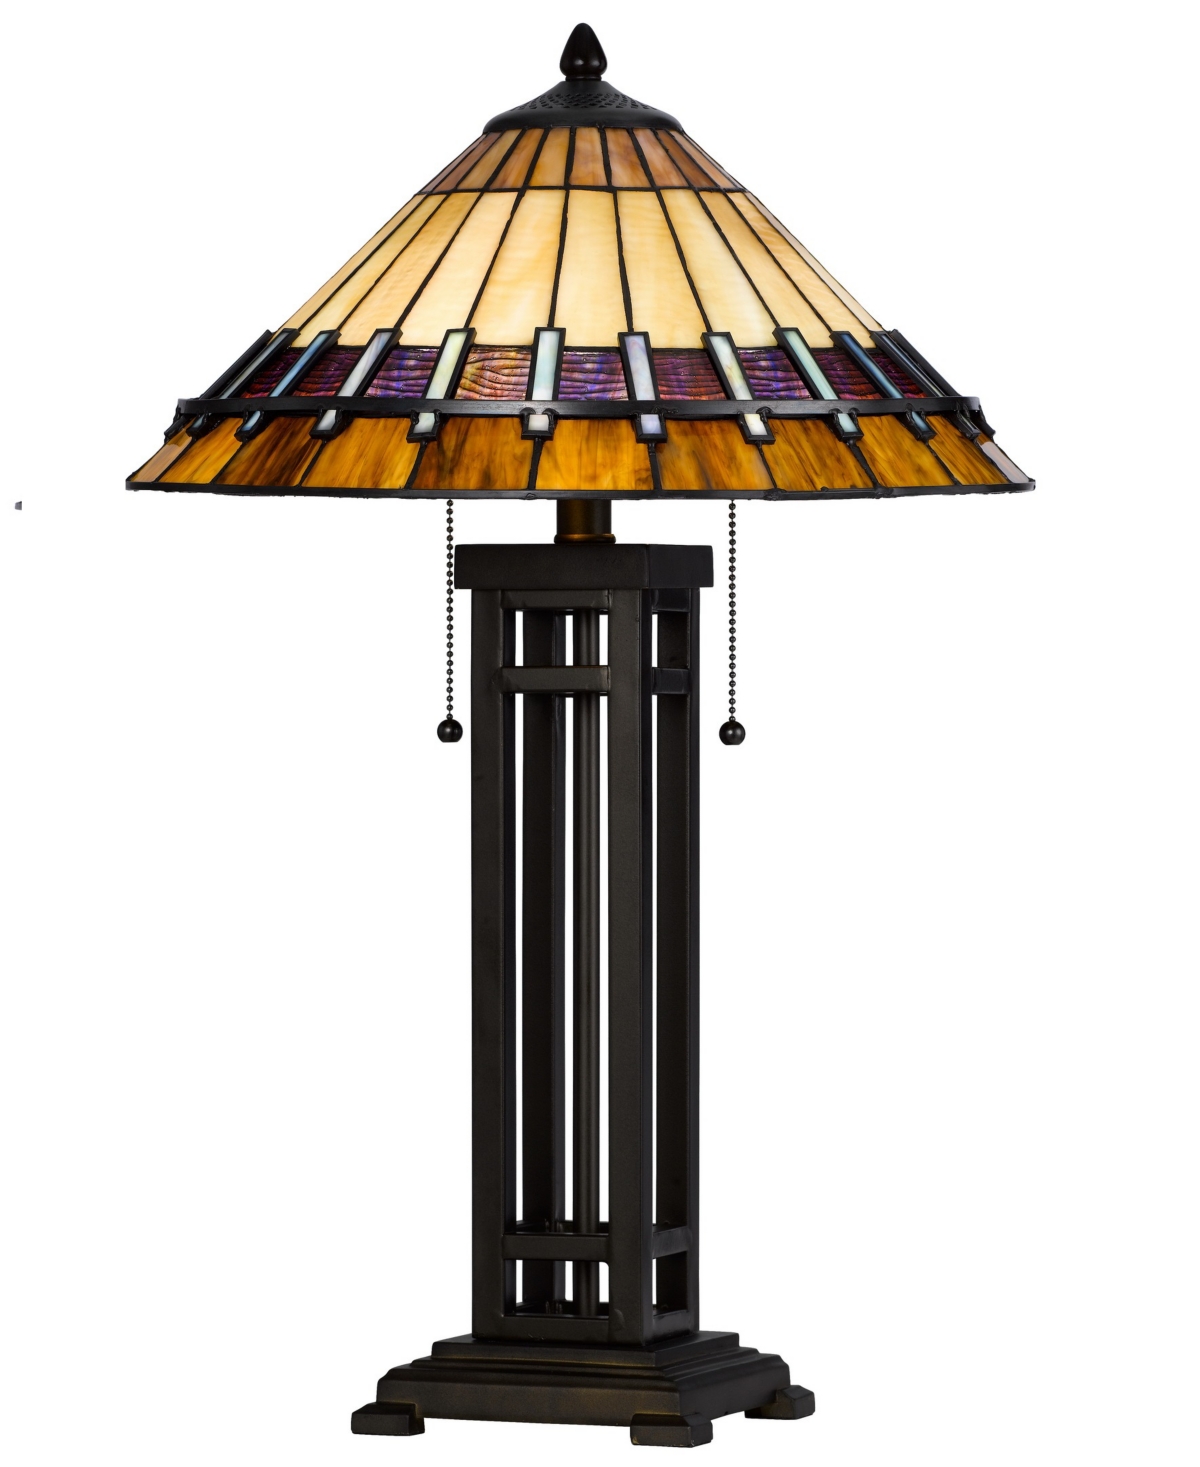 Cal Lighting 25.5" Height Metal And Resin Table Lamp In Dark Bronze